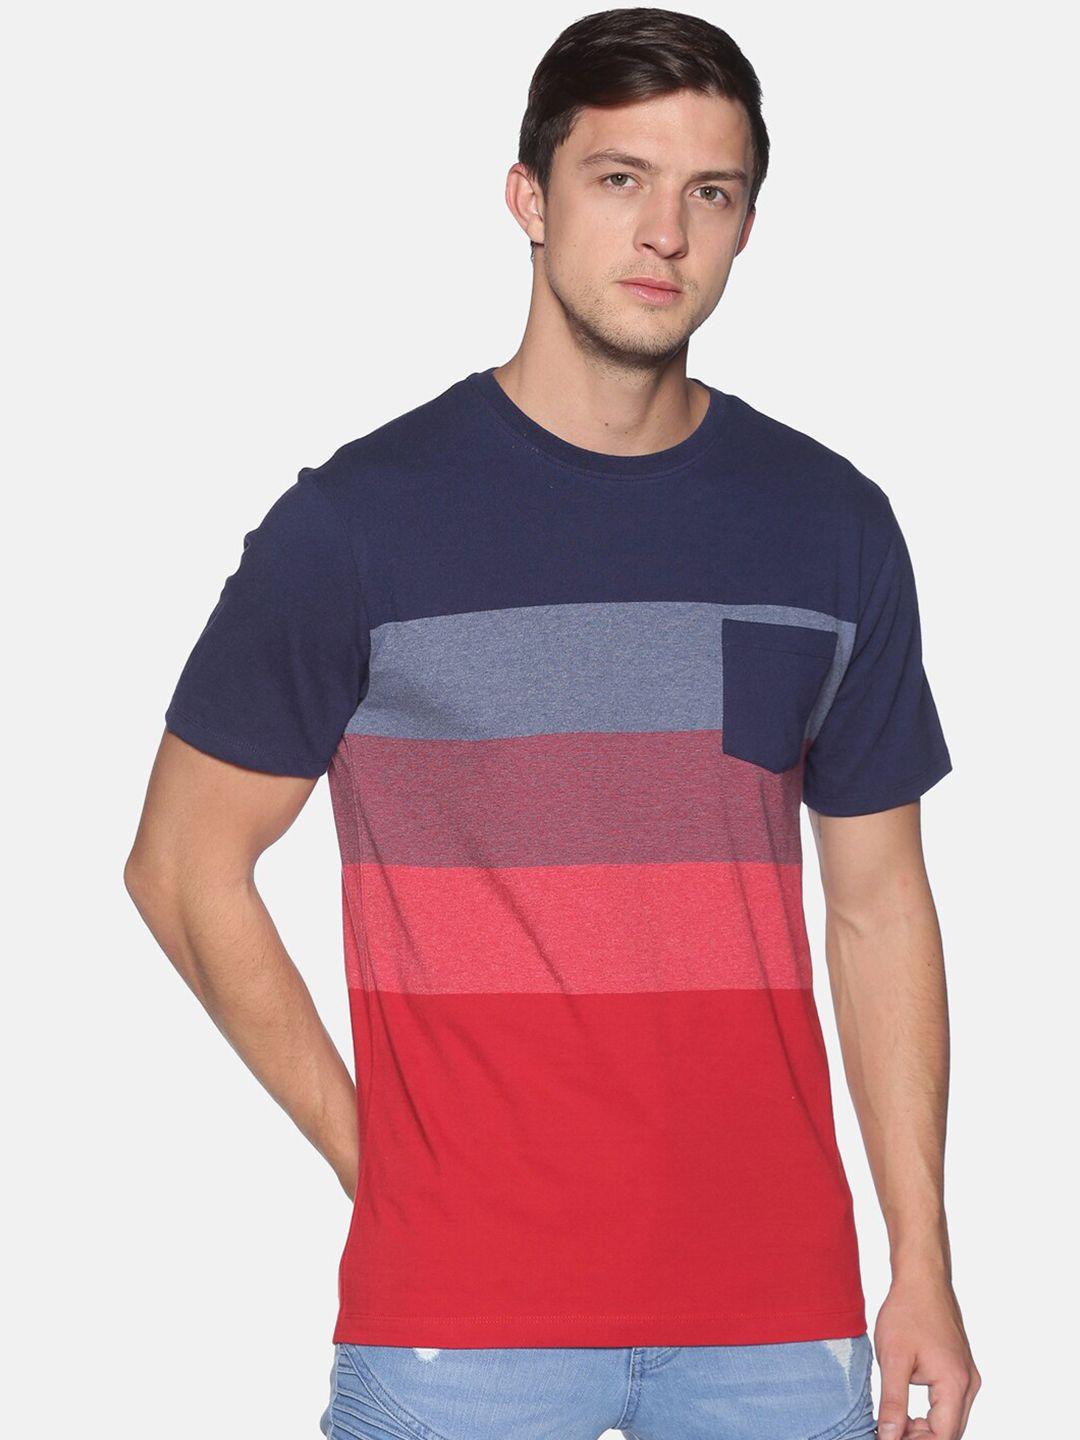 urgear-men-red-&-blue-striped-round-neck-t-shirt